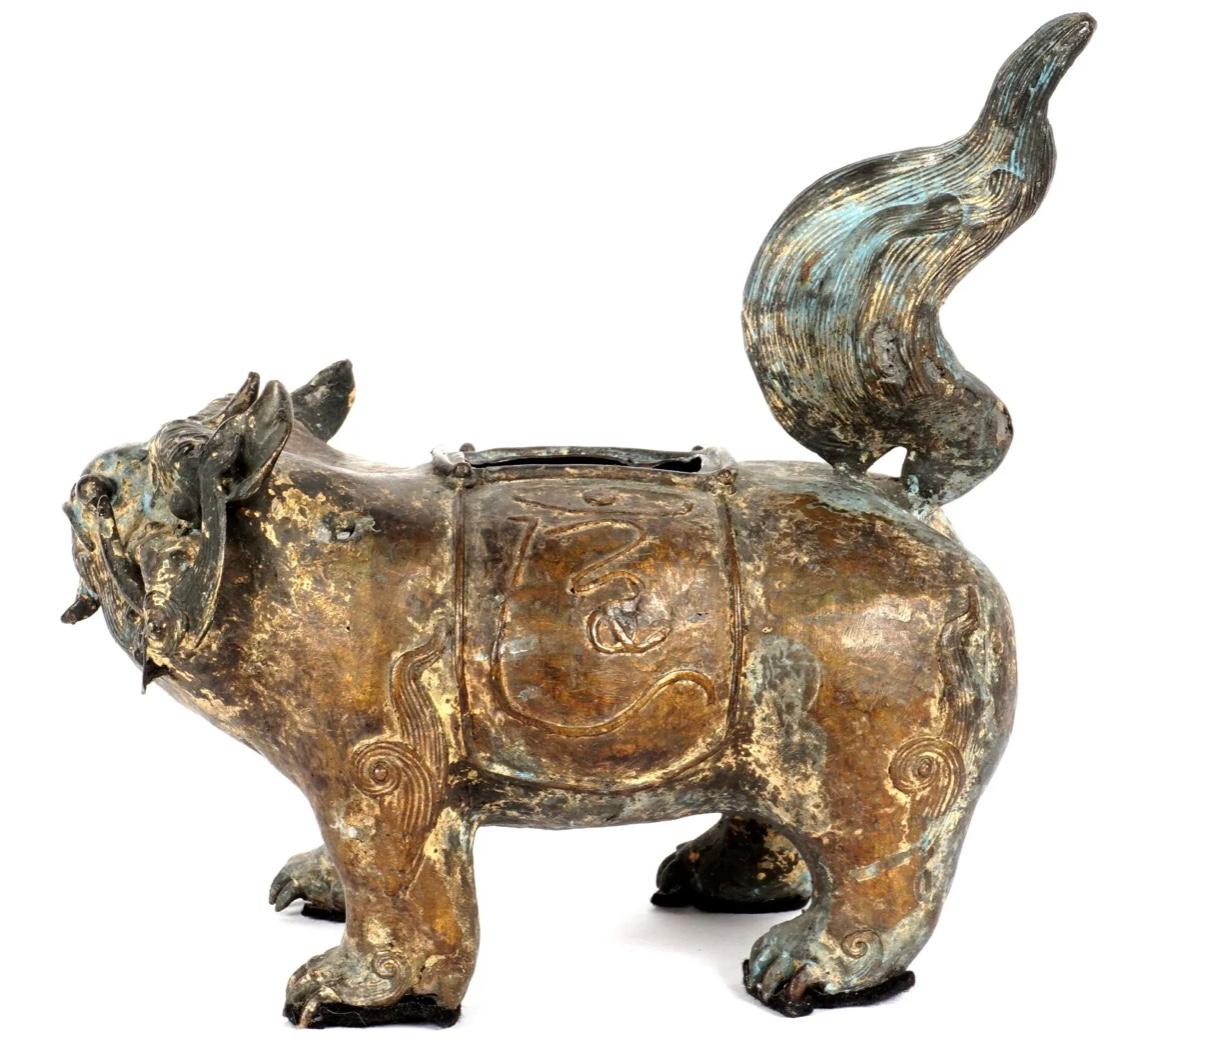 Encensoir en bronze en forme de chien mythologique trapu à queue de flamme, sur quatre pieds, sans marquage visible. Peut-être le début de la dynastie Qing. Pas de couvercle.